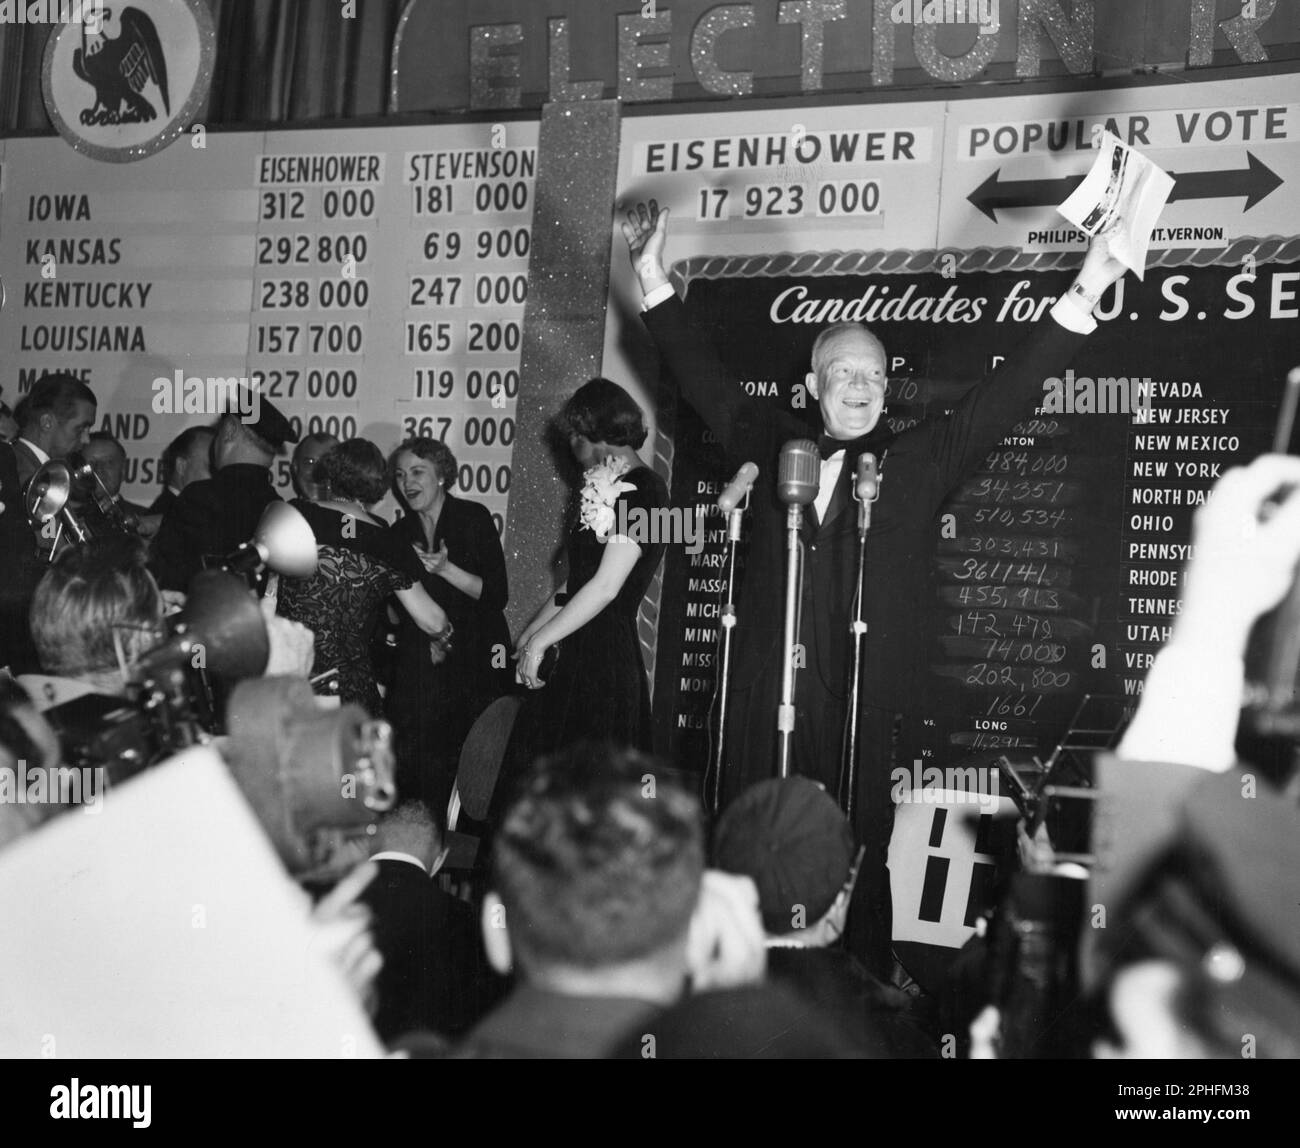 Das berühmte Eisenhower Grinsen bricht aus, als General Dwight D Eisenhower begeisterten Anhängern im Commodore Hotel in der Wahlnacht, New York, NY, 11/4/1952, zuwinkt. (Foto: United States Information Agency Stockfoto